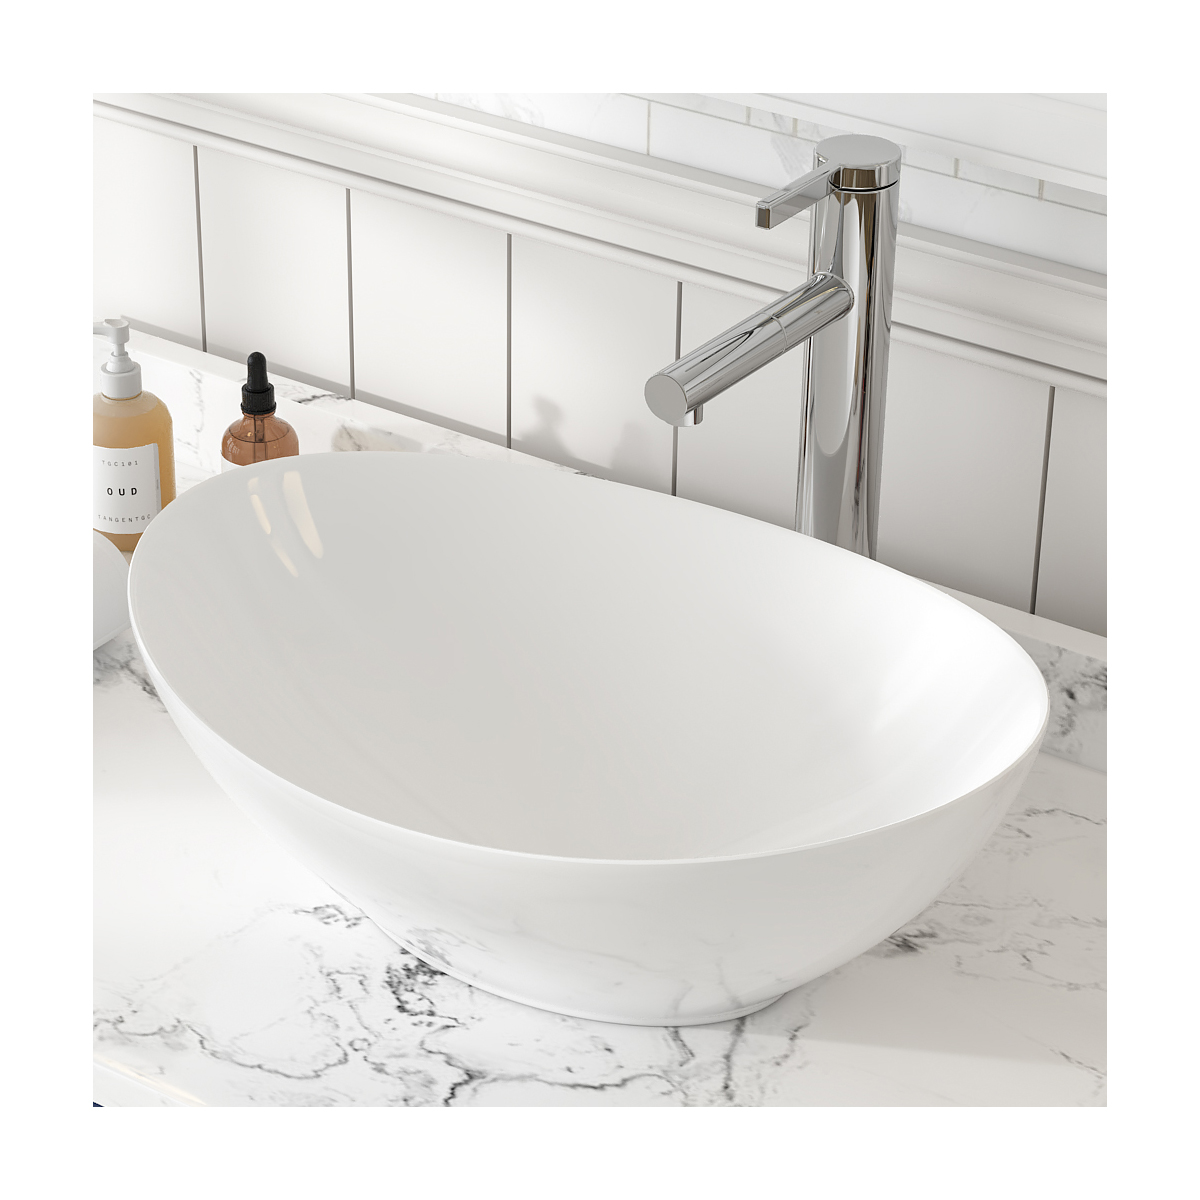 MEJE Fregadero ovalado de cerámica blanca de 16 × 13 pulgadas, cuenco moderno con forma de huevo, lavabo de tocador de baño sobre encimera